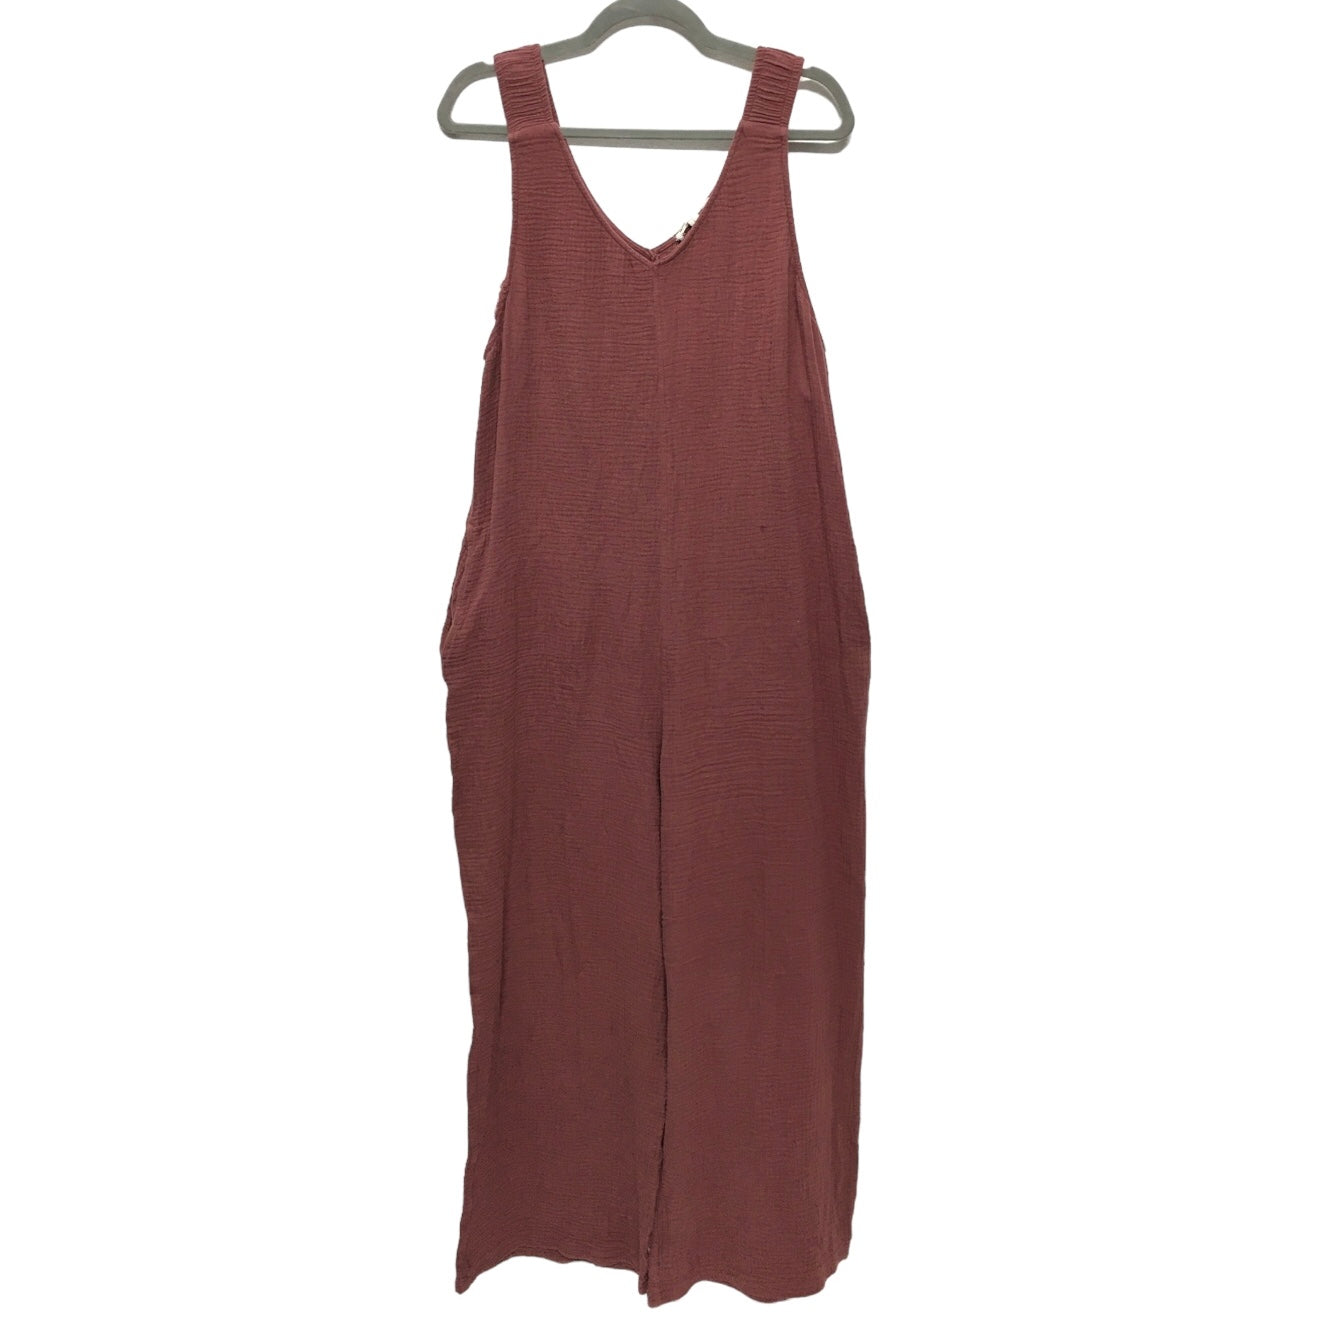 Brown & Red Jumpsuit Indigo Thread, Size L